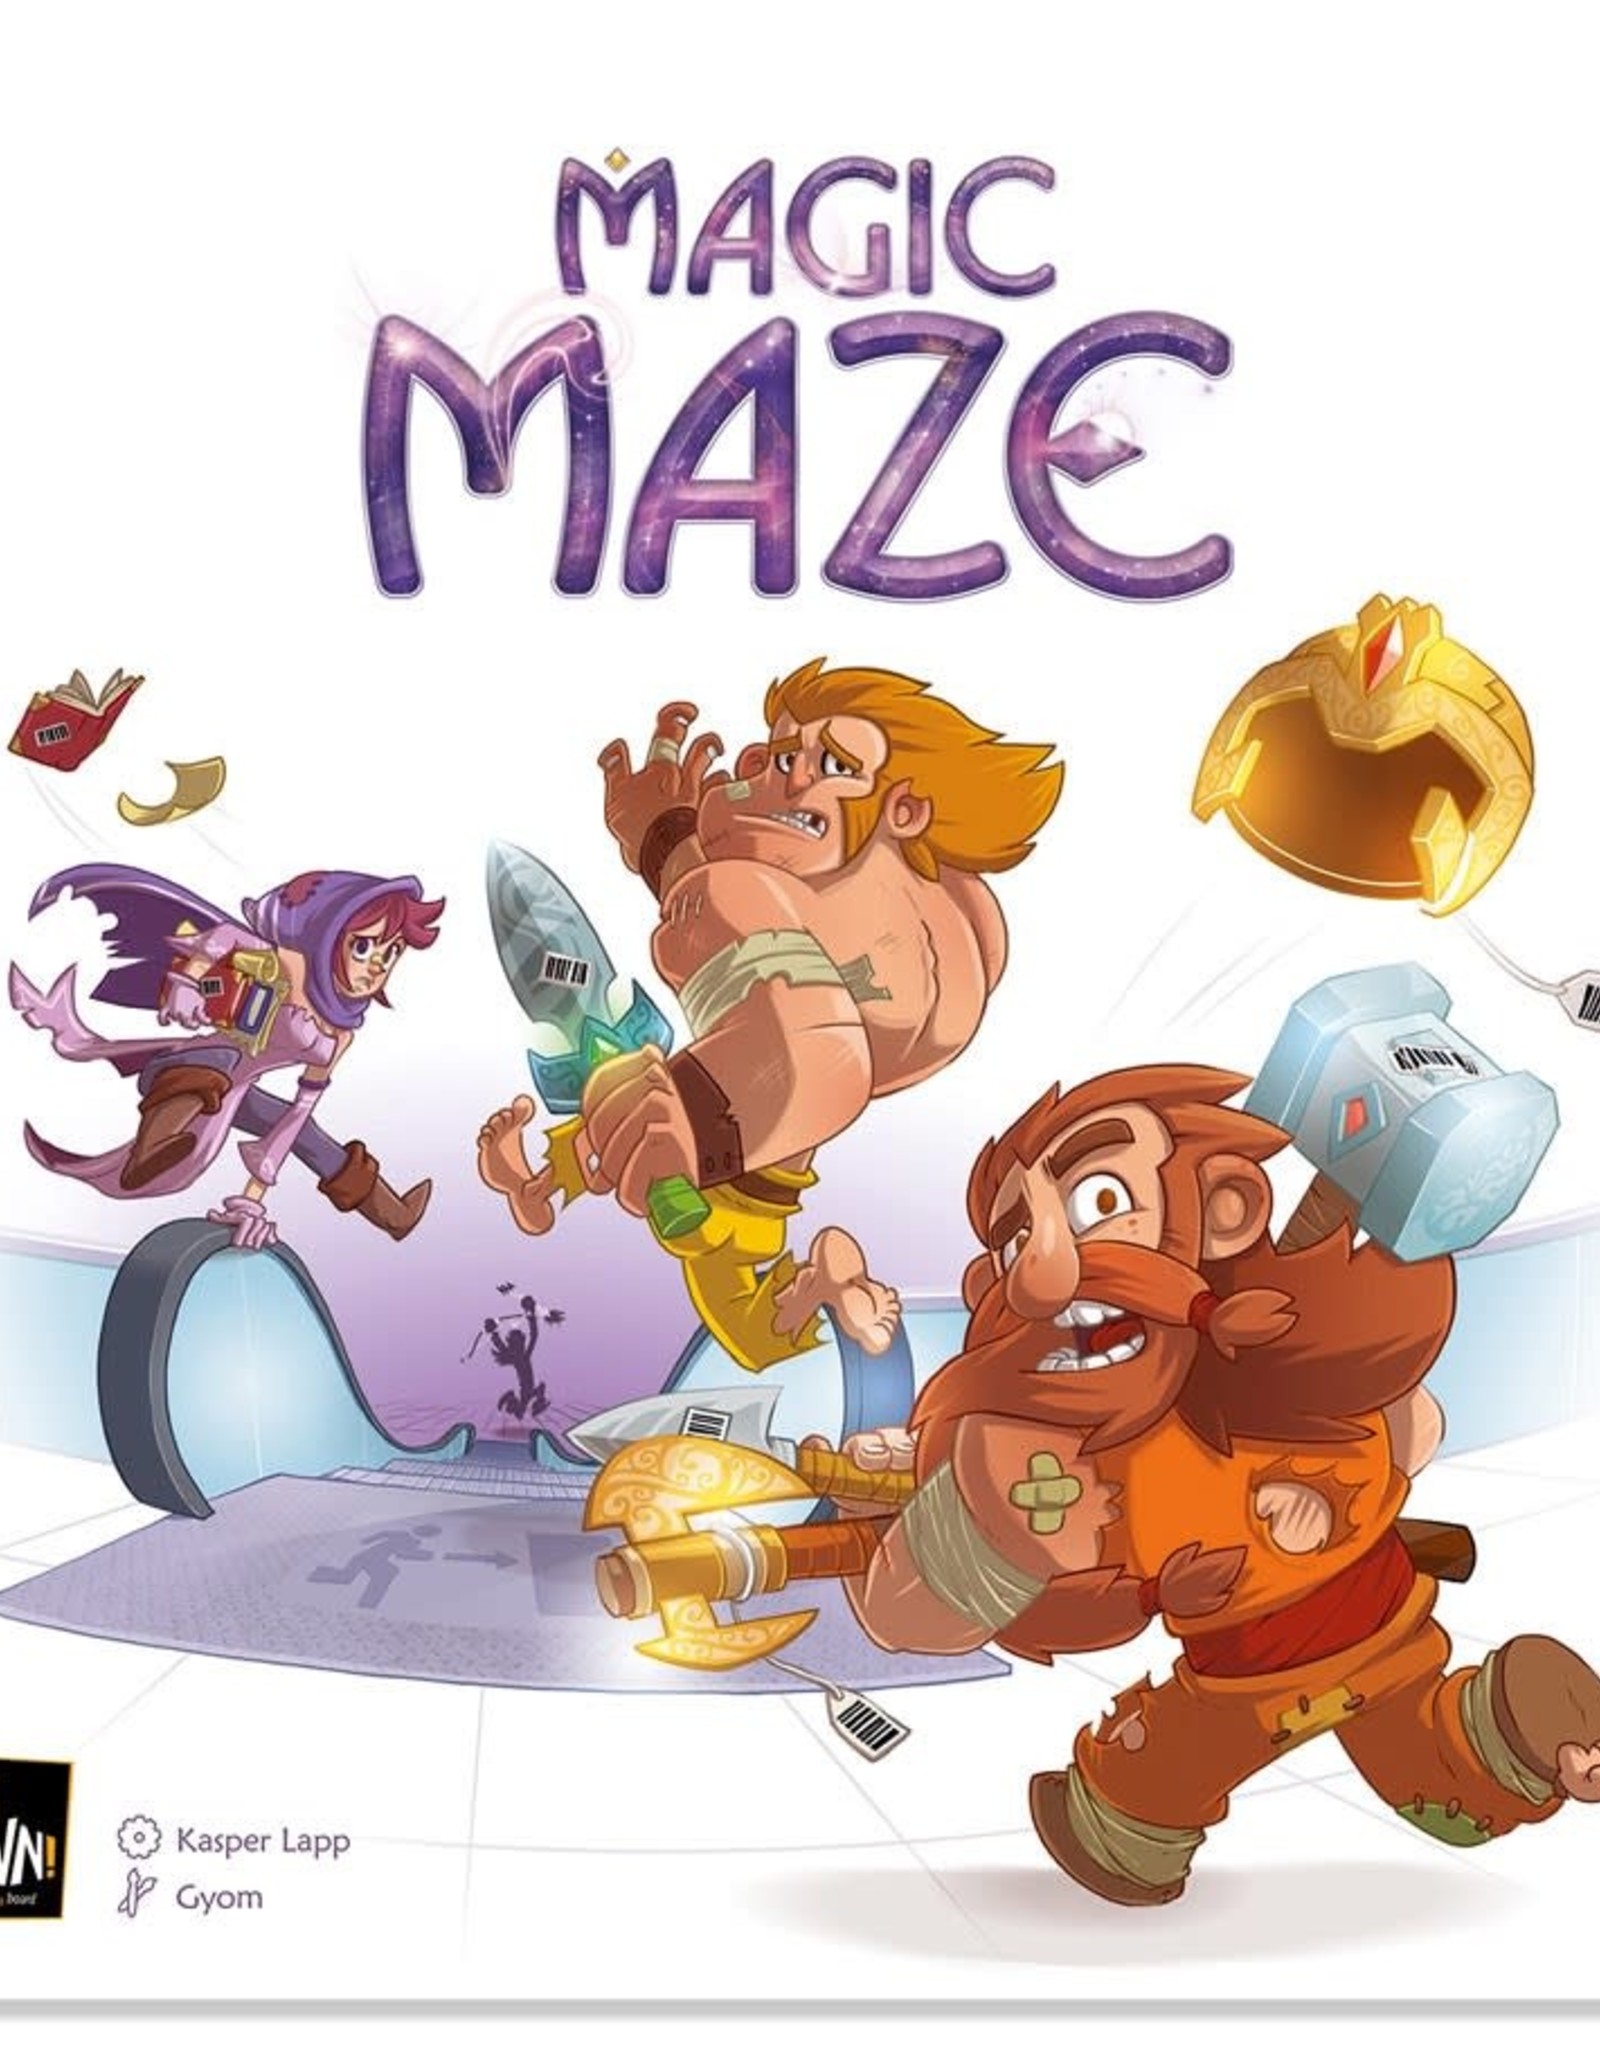 Misc Magic Maze